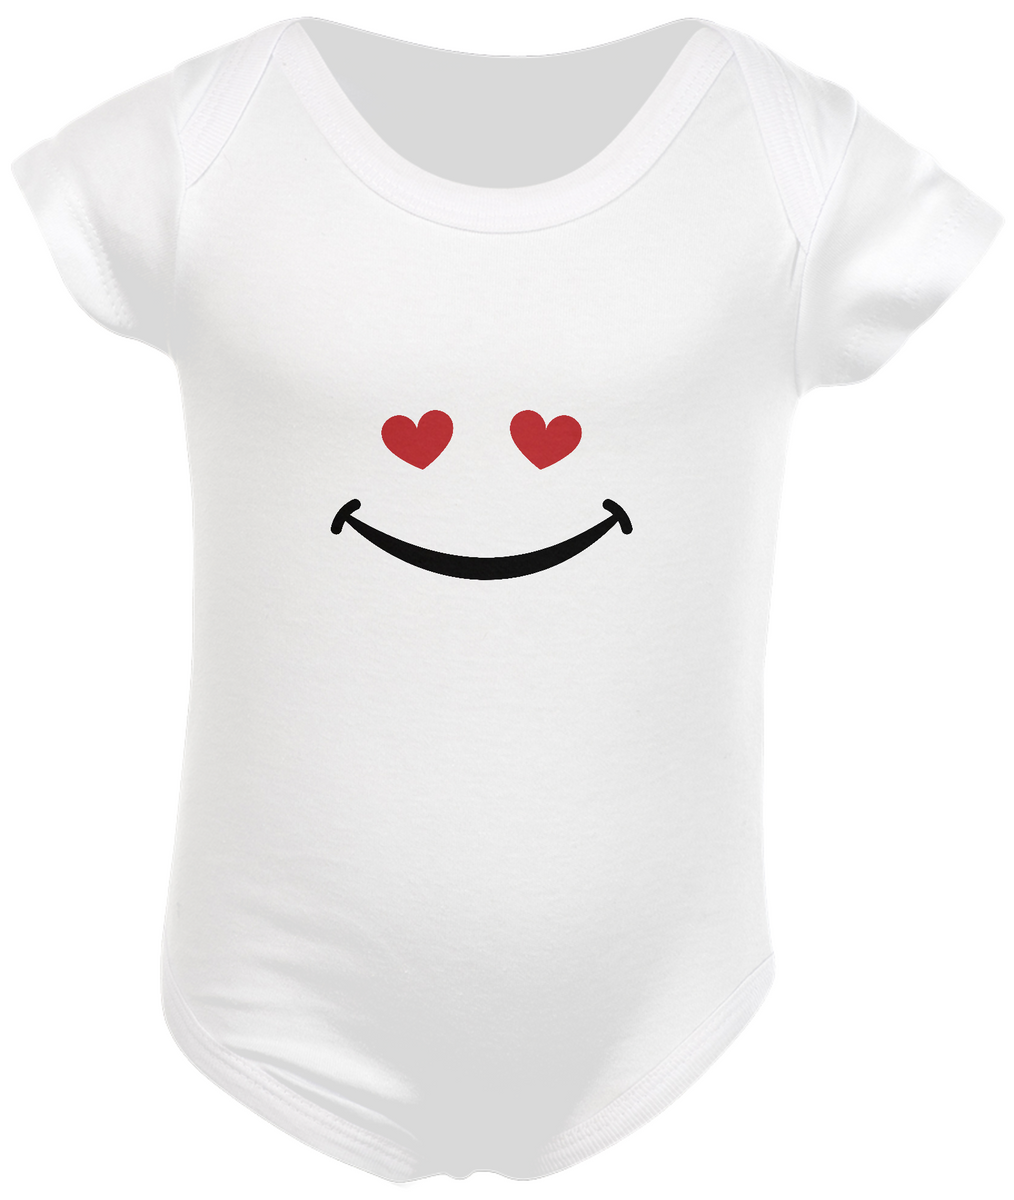 Nome do produto: Body Infantil - sorriso coração